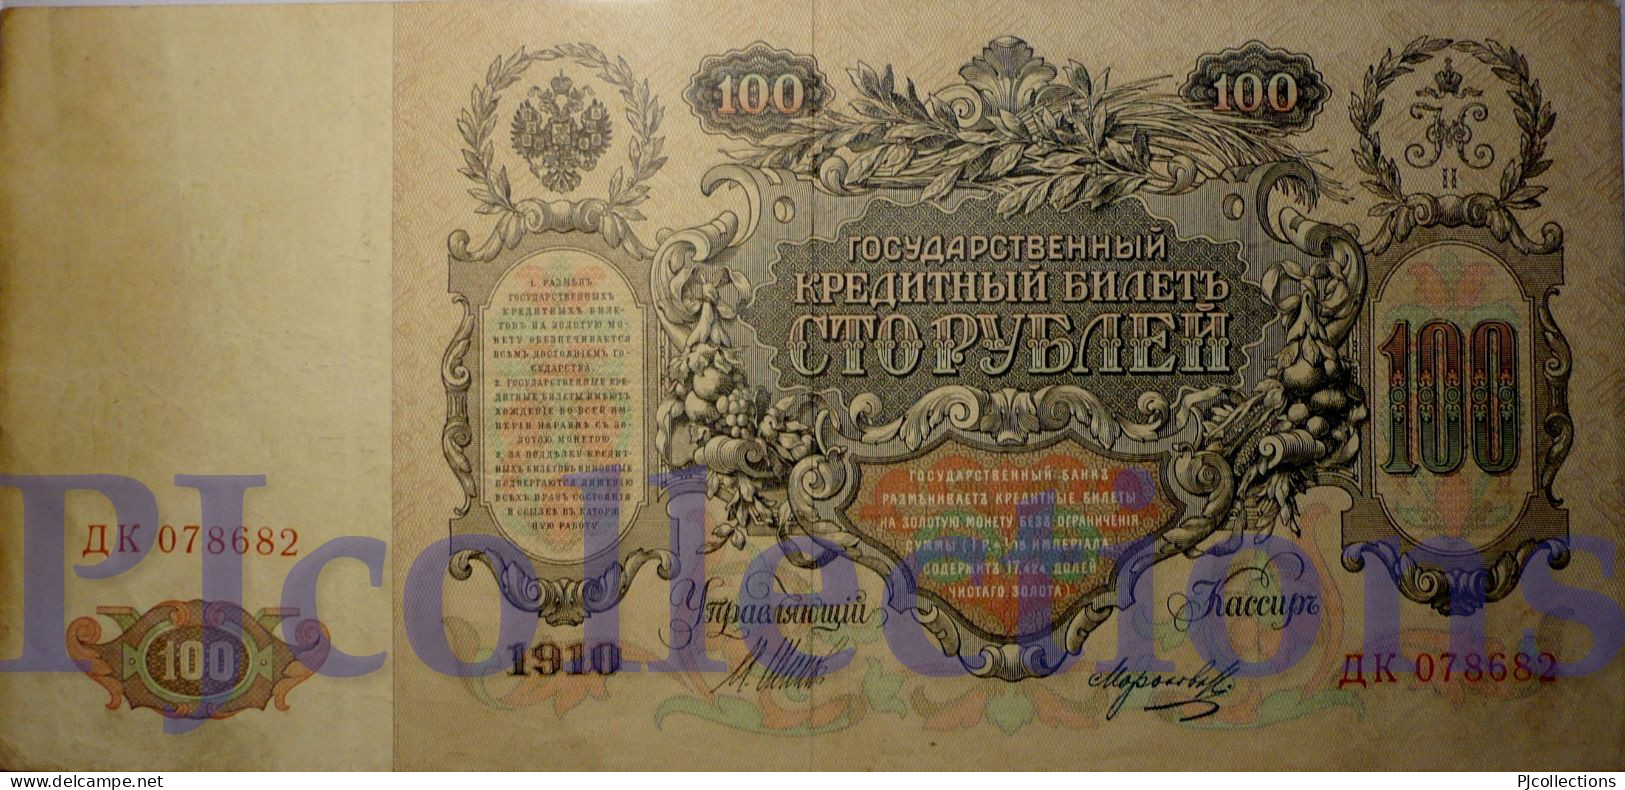 RUSSIA 100 RUBLES 1910 PICK 13b VF - Russia